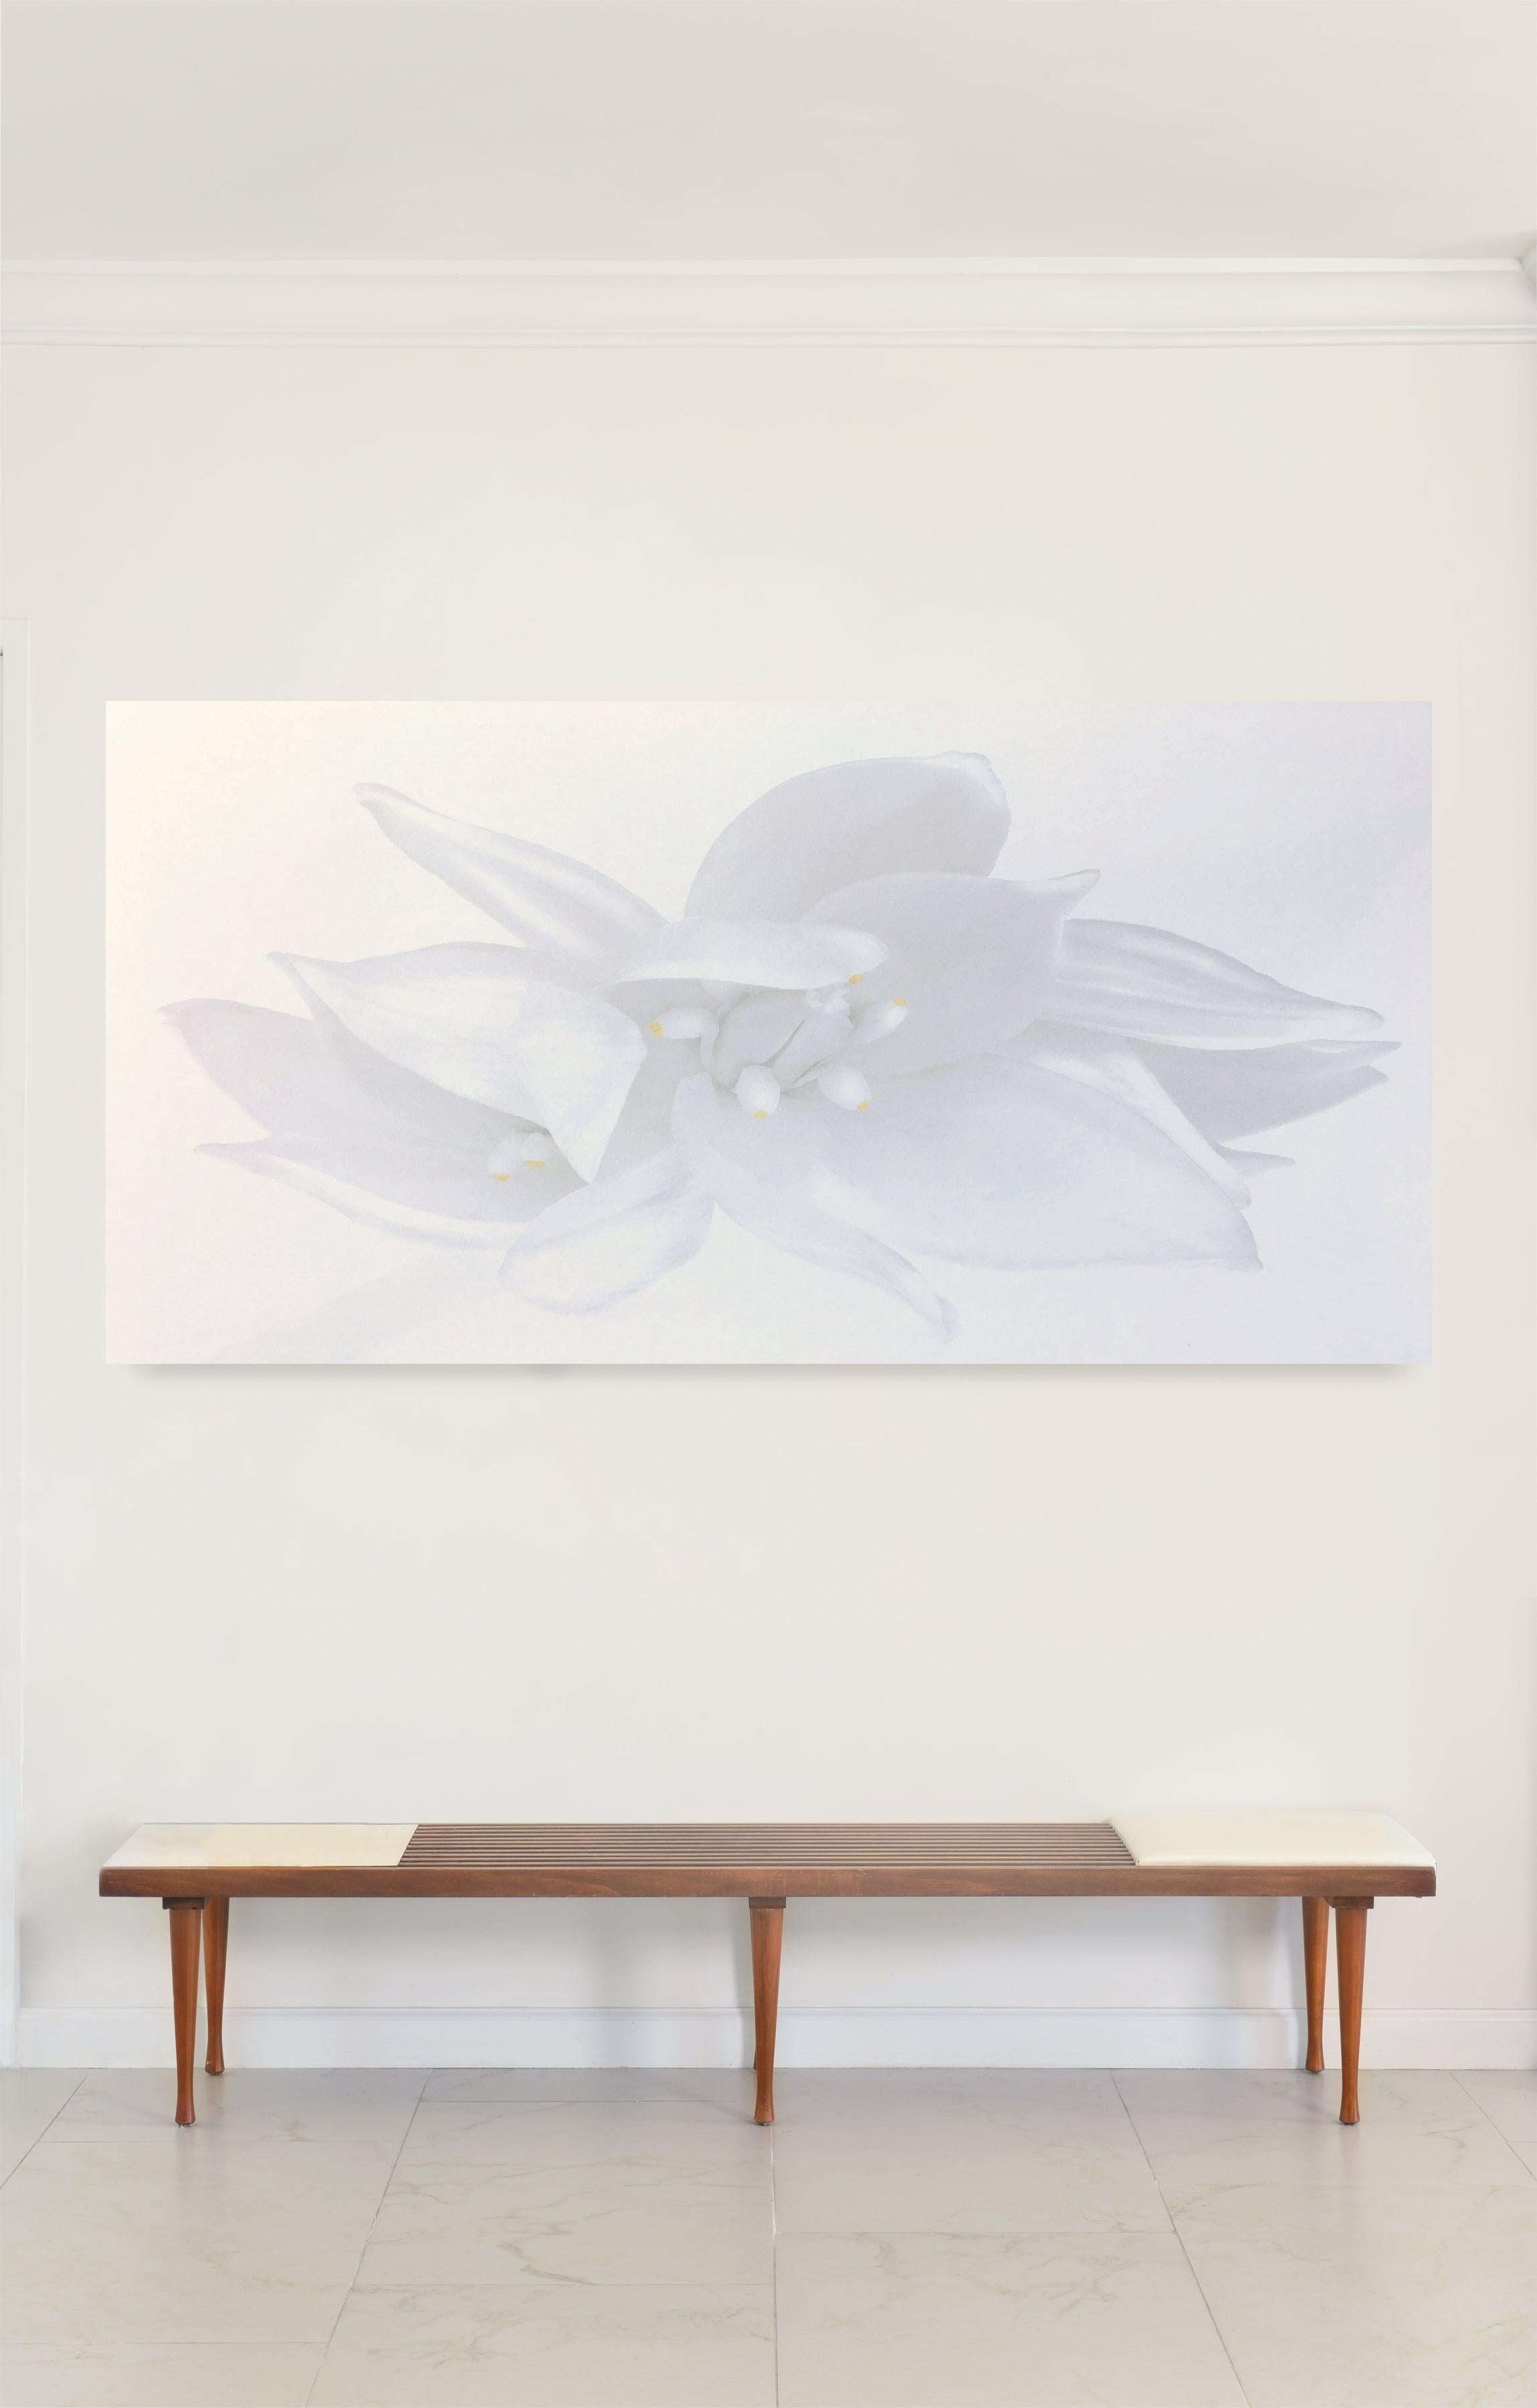 Rapture, Weiße Blumenschrank-Schrank-Fotografie in Schwarz-Weiß auf Plexiglas – Photograph von Iran Issa-Khan